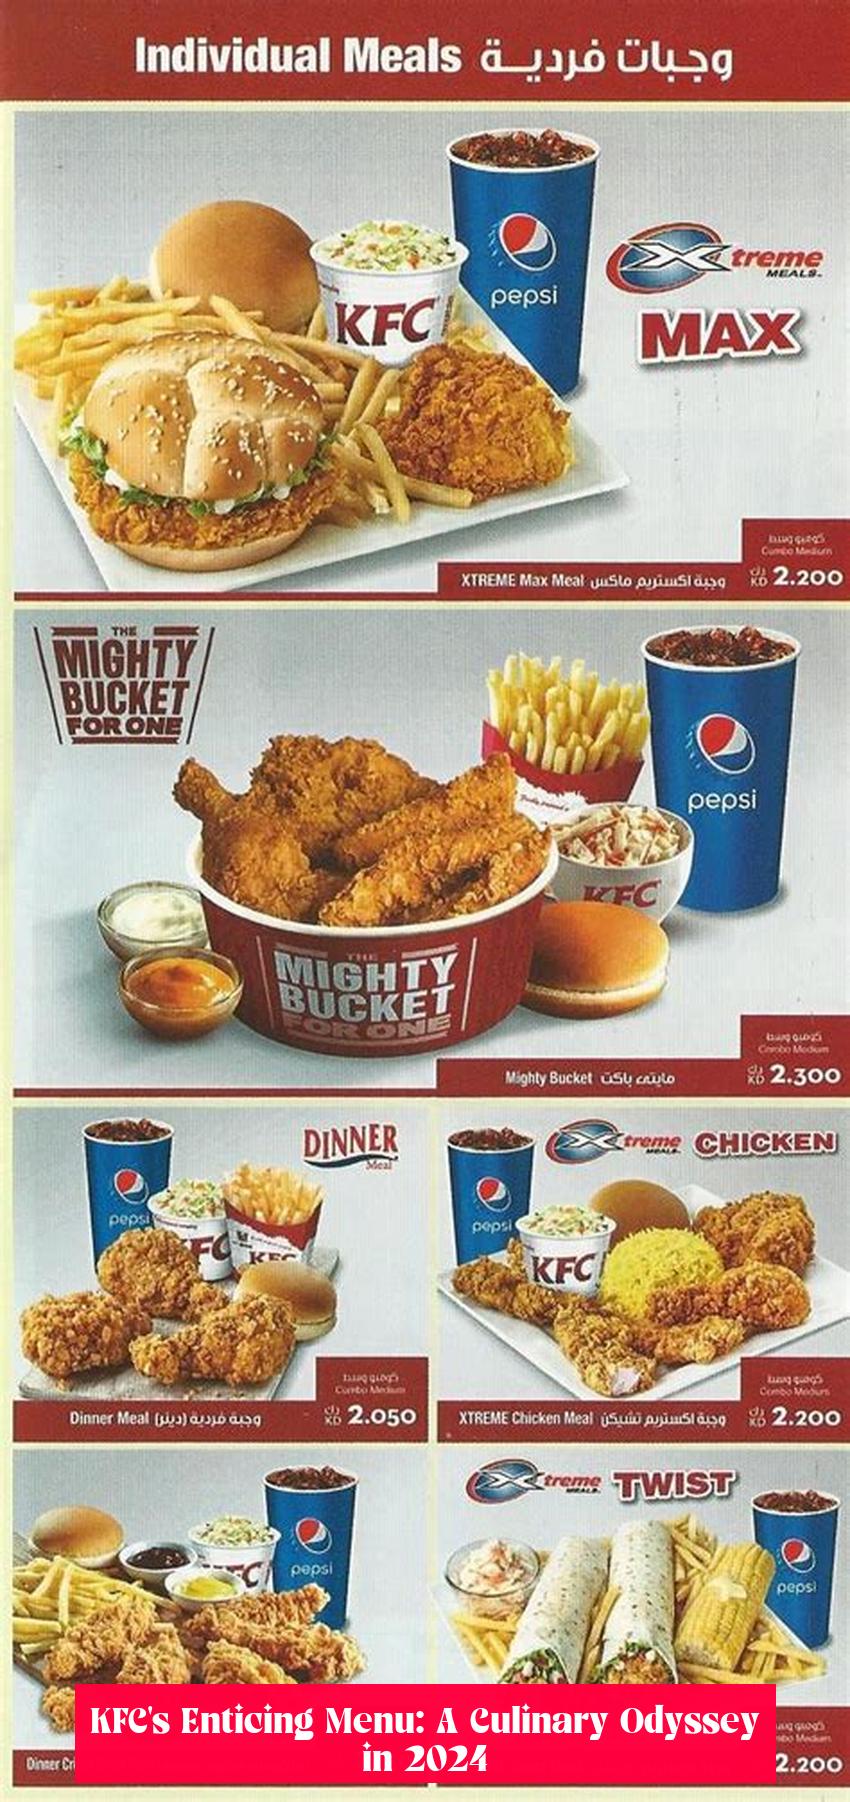 KFC's Enticing Menu: A Culinary Odyssey in 2024